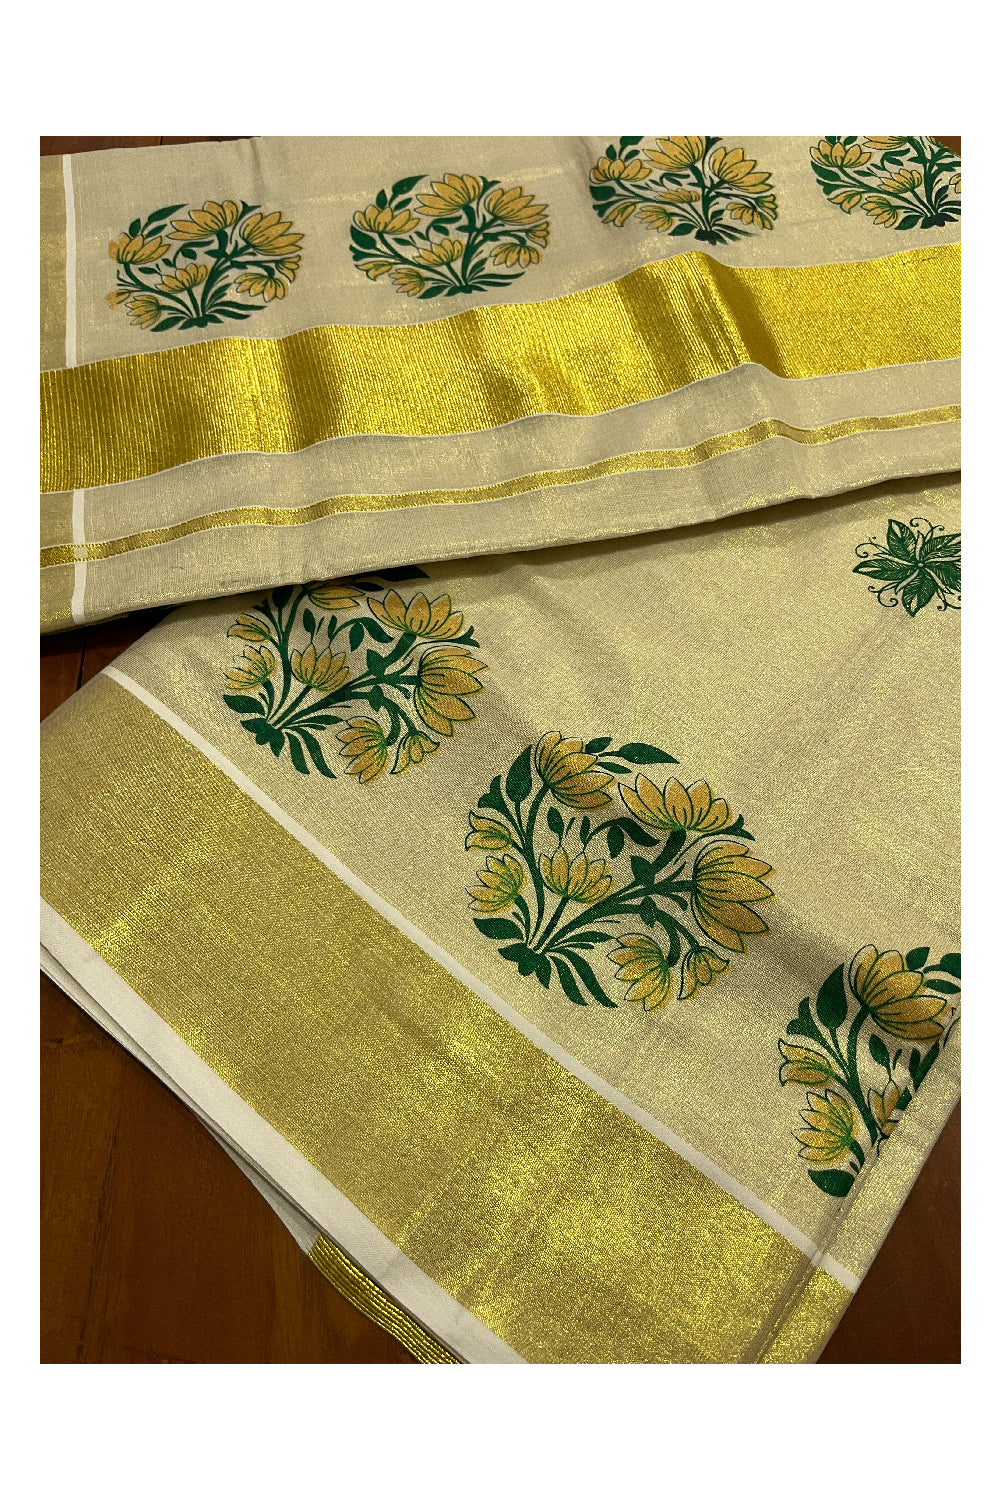 Kerala Tissue Kasavu Green Golden Block Printed Design Saree